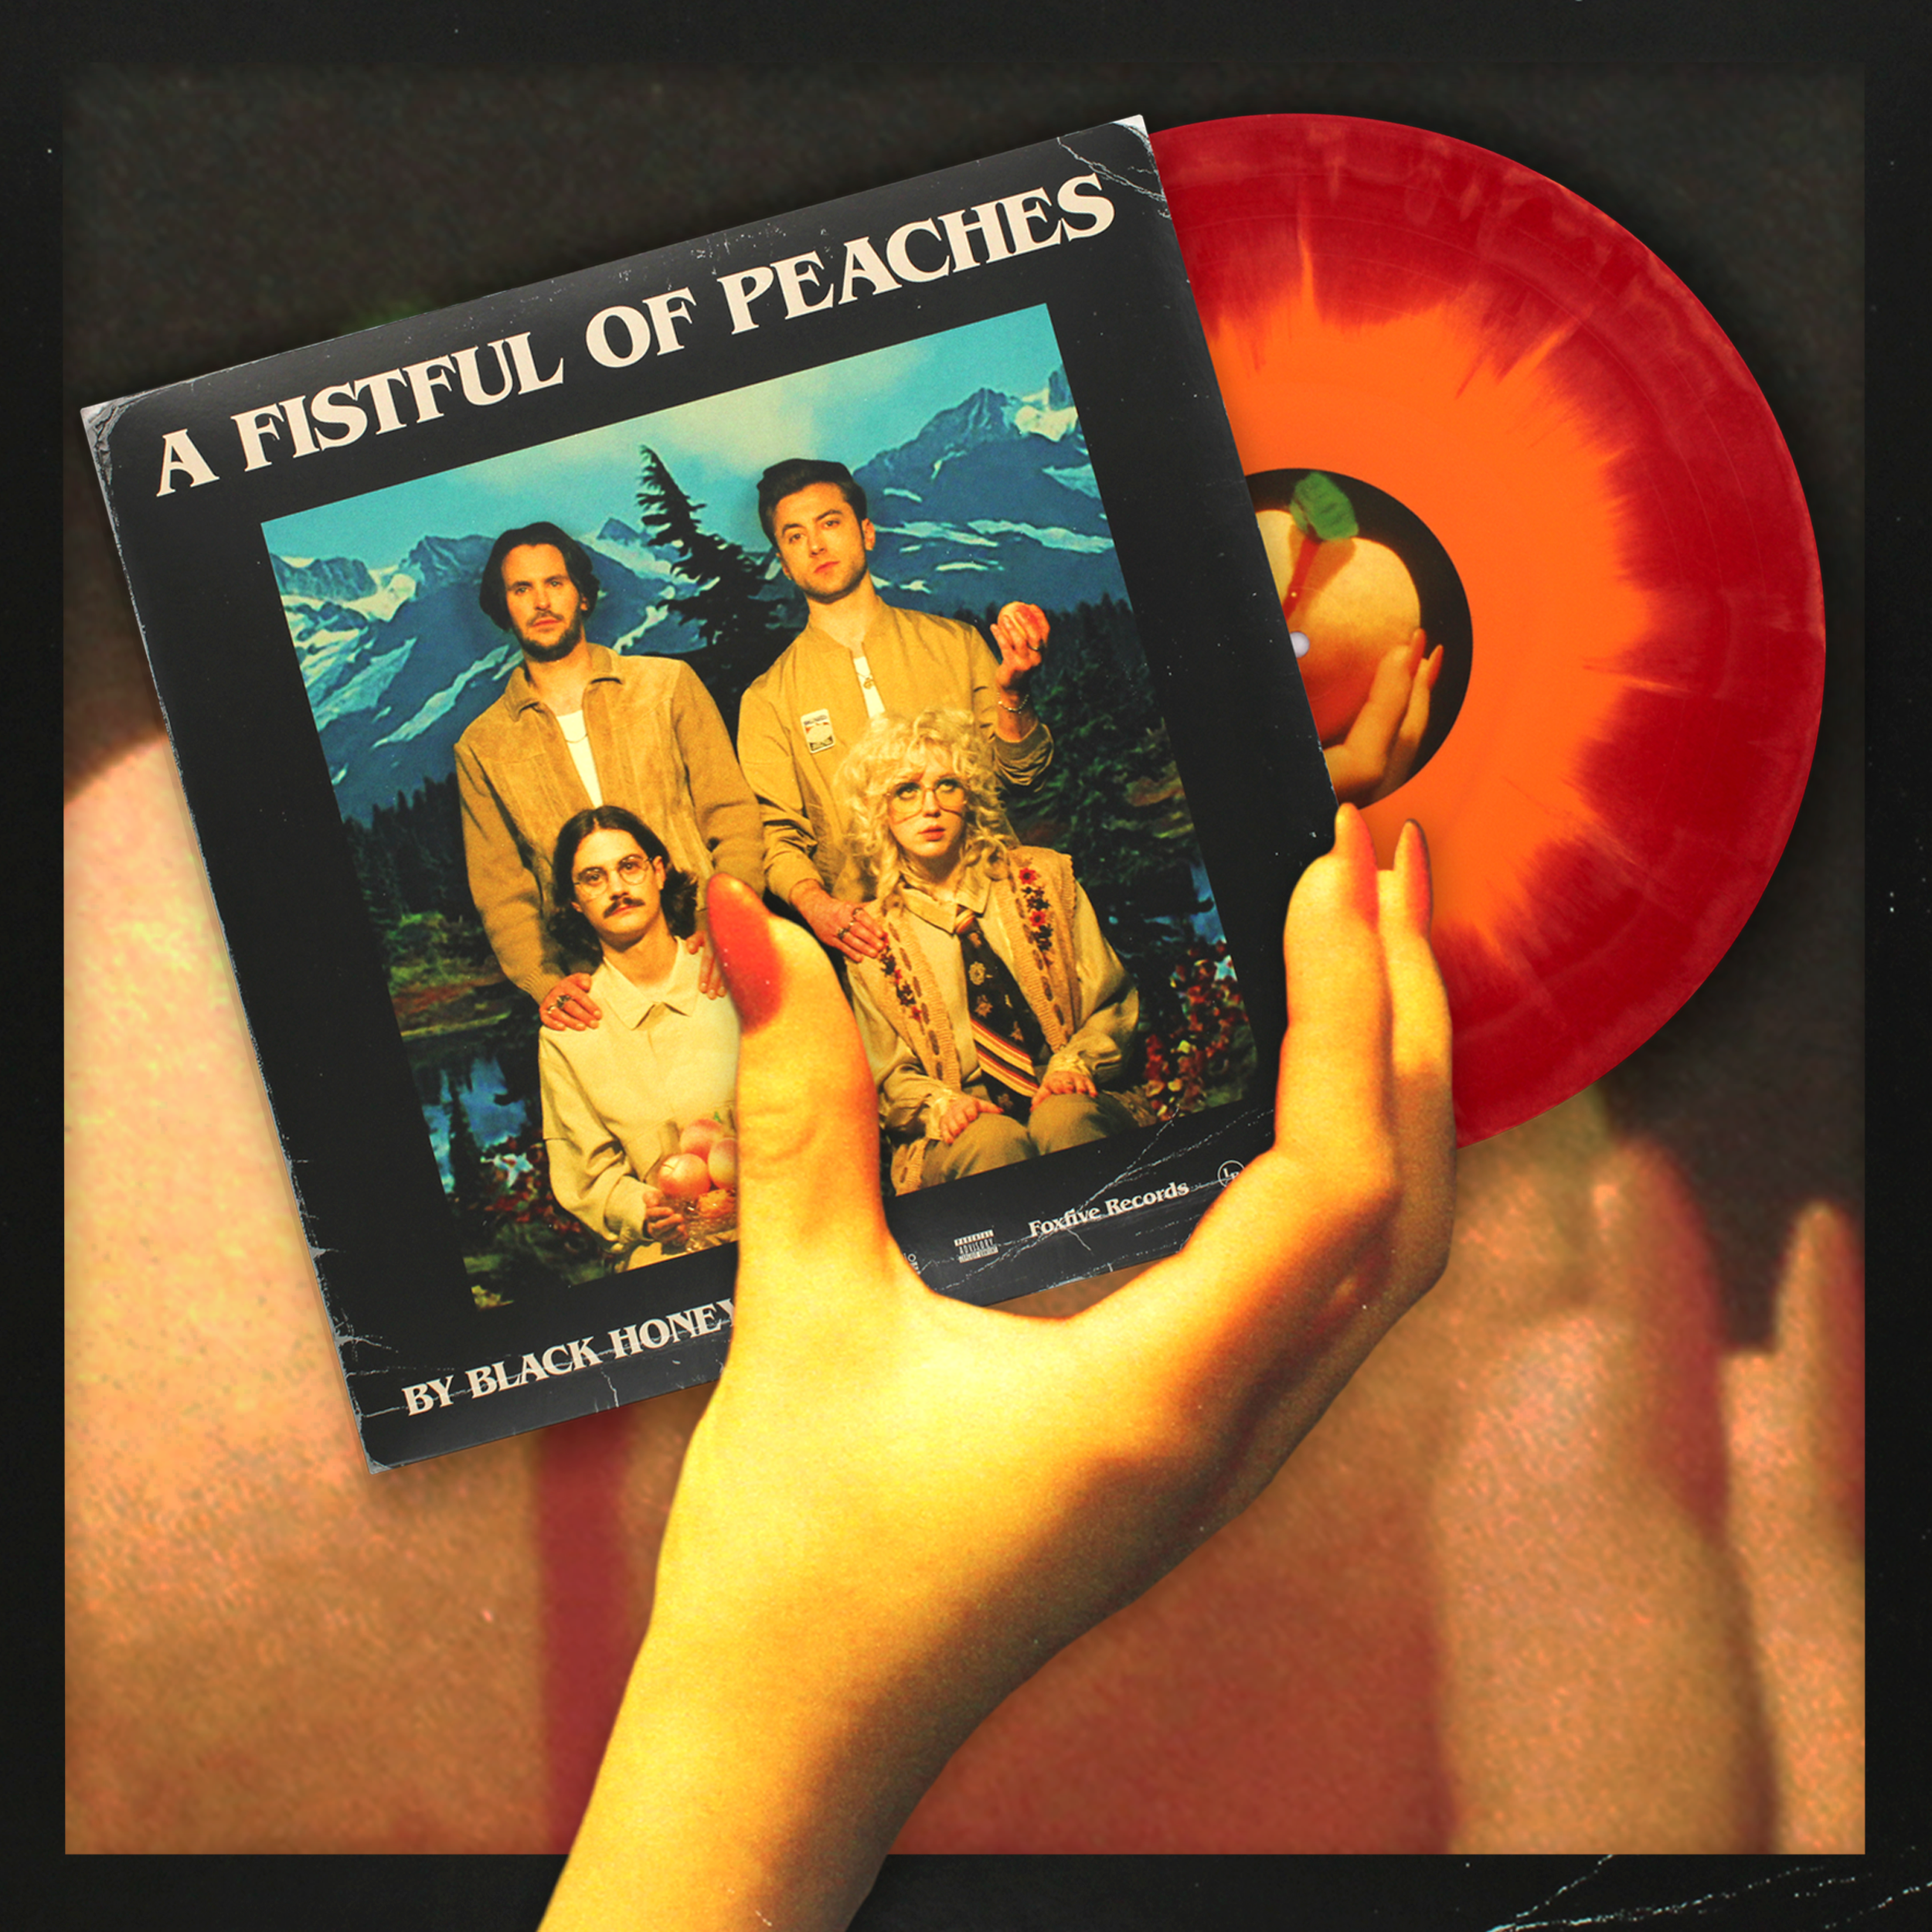 Black Honey - A Fistful Of Peaches (explicit Lyrics) (vinyl) : Target